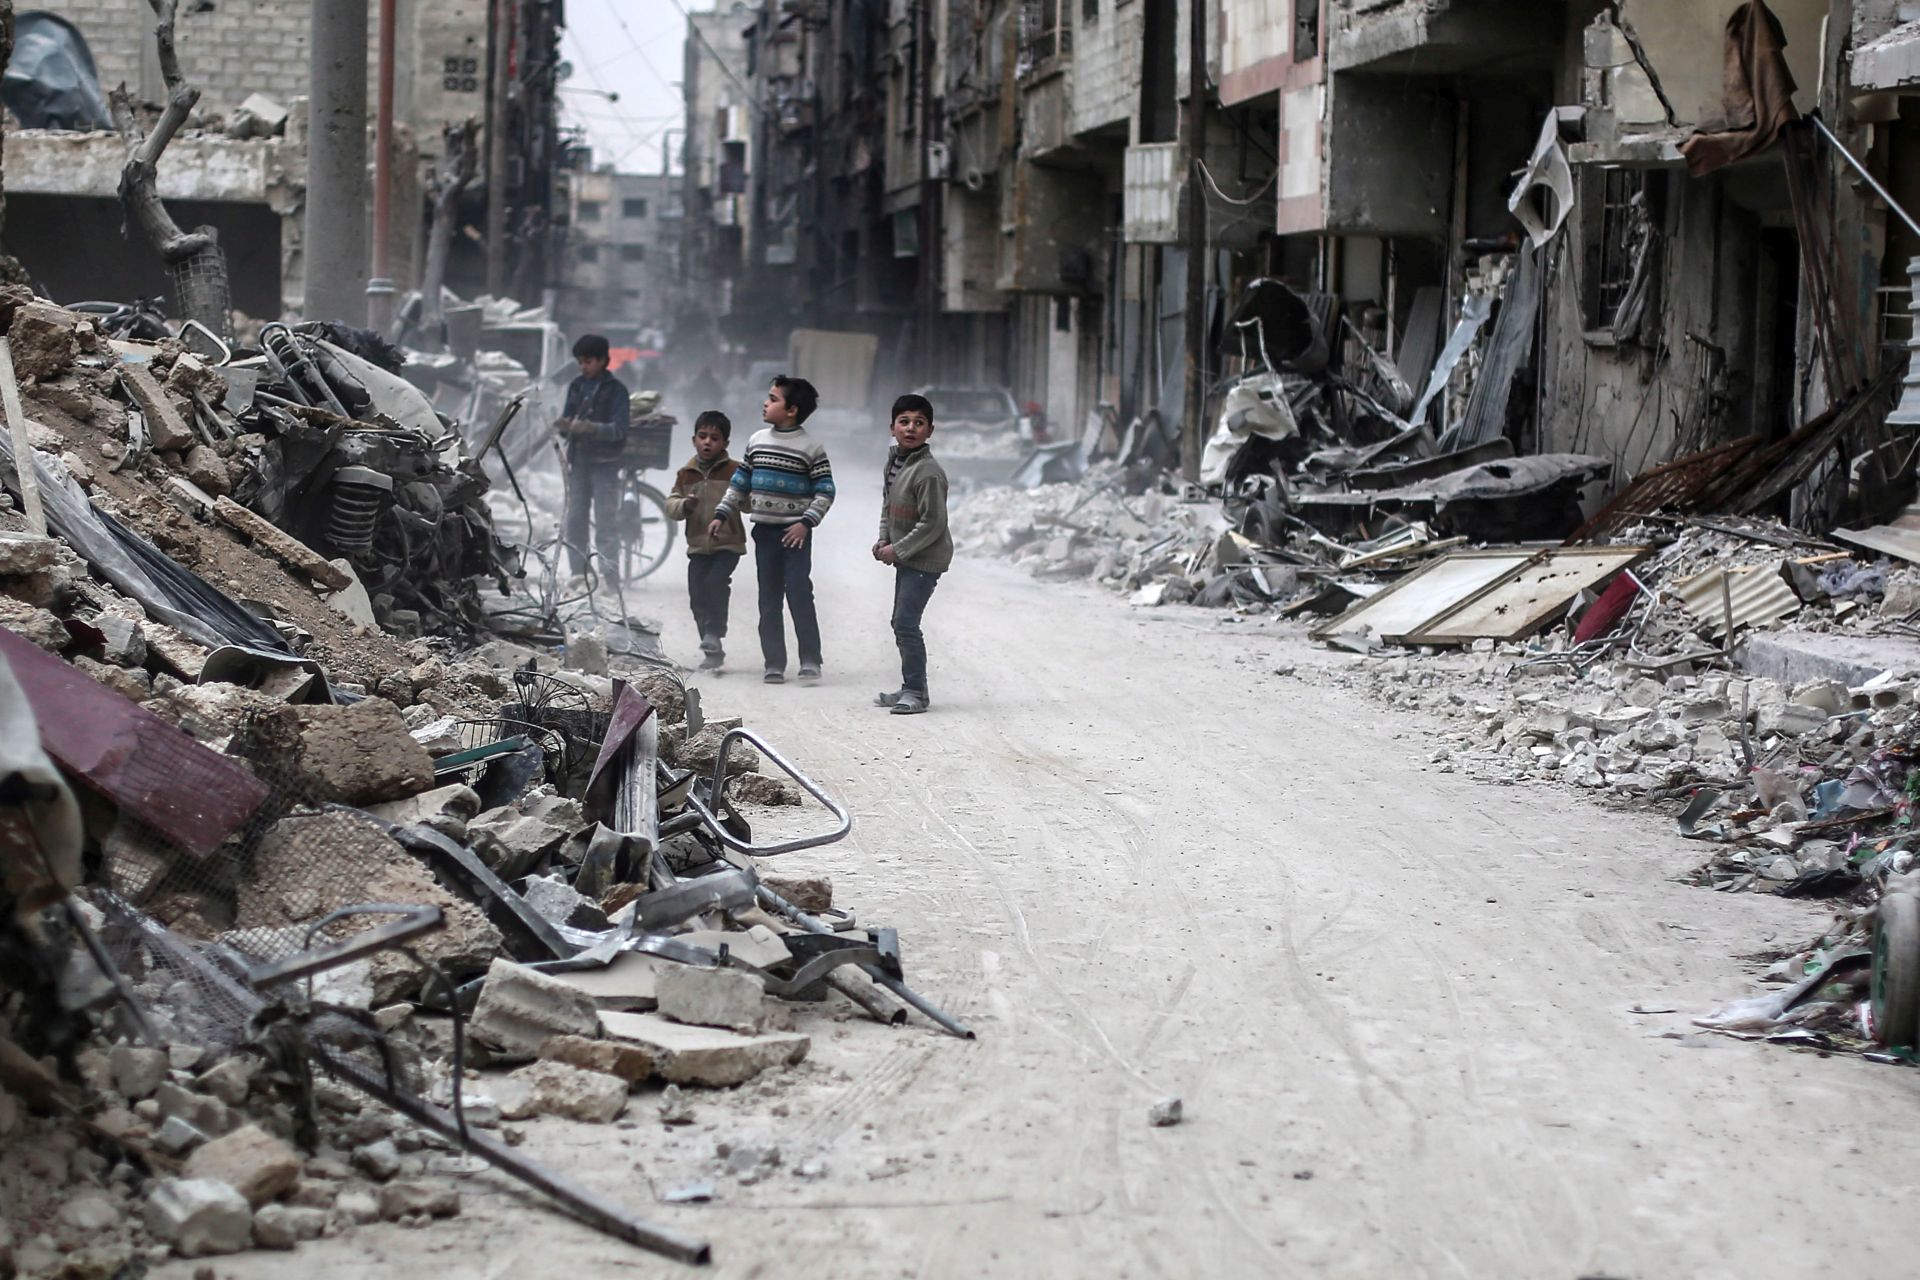 Rendezést sürget öt nyugati ország a szíriai polgárháború tizedik évfordulóján